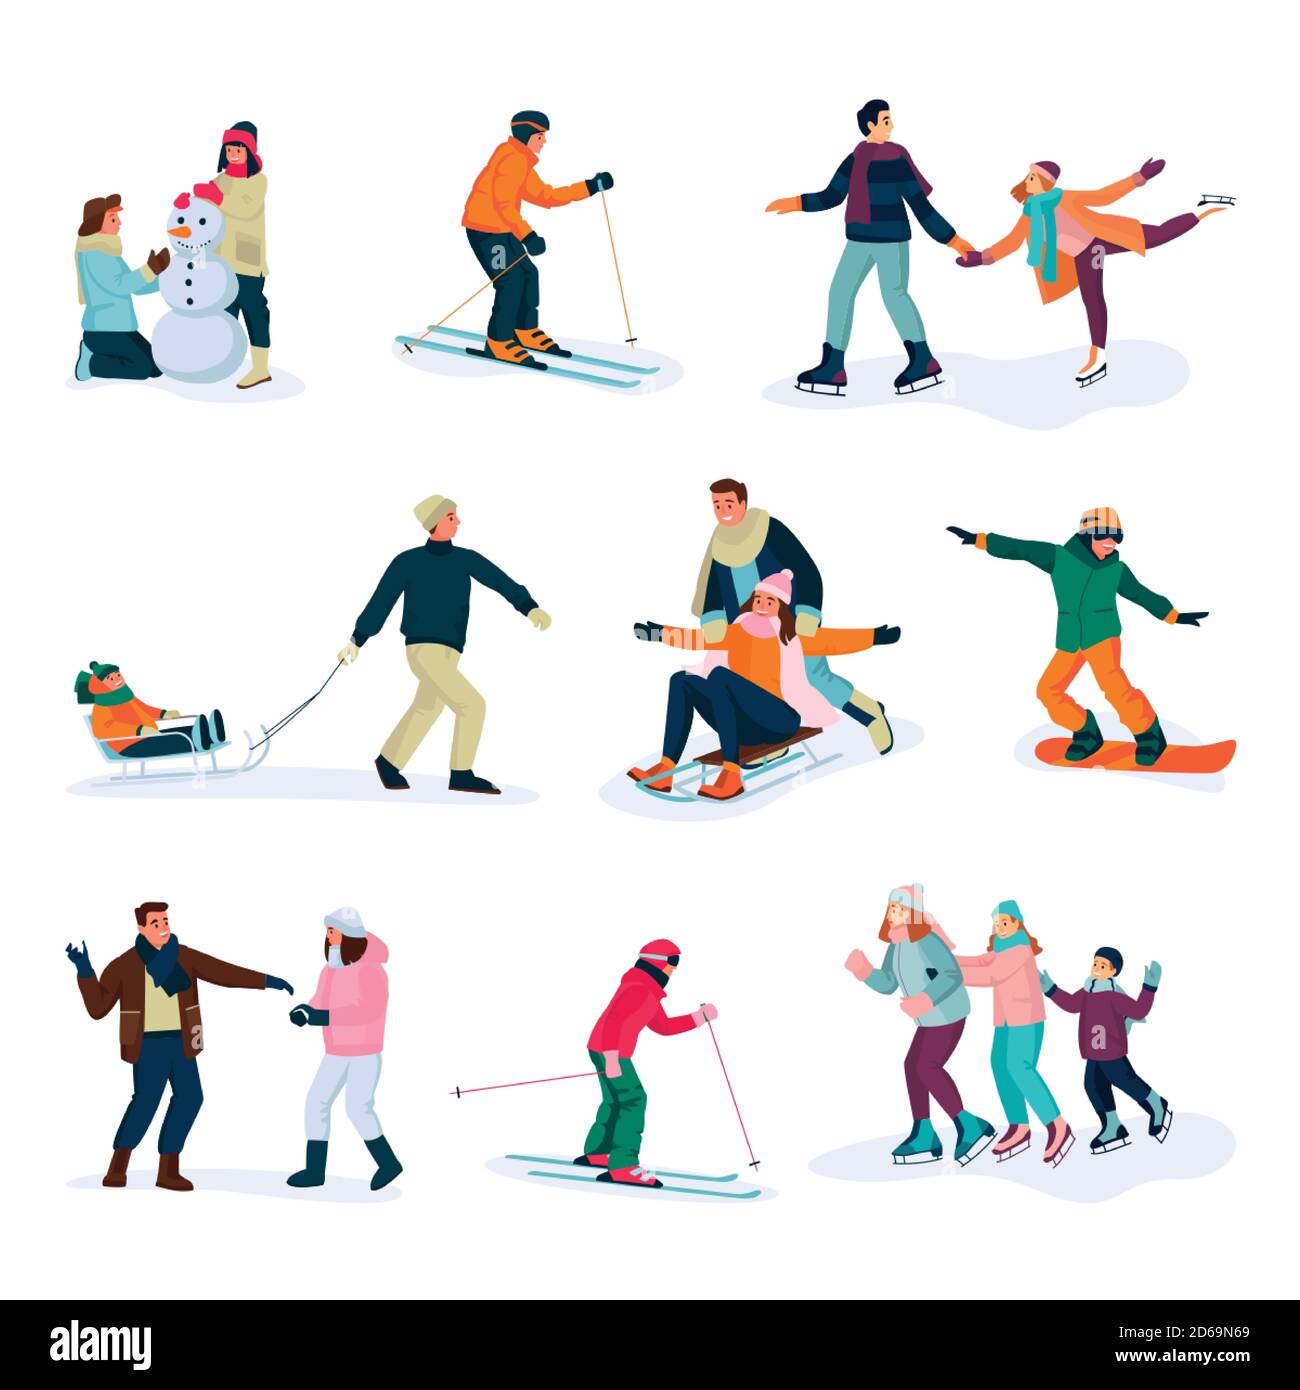 Sport invernali, stile di vita e attività. Felici giovani set, isolati su sfondo bianco. Illustrazione di cartoni animati piatti vettoriali ed elementi di disegno Illustrazione Vettoriale